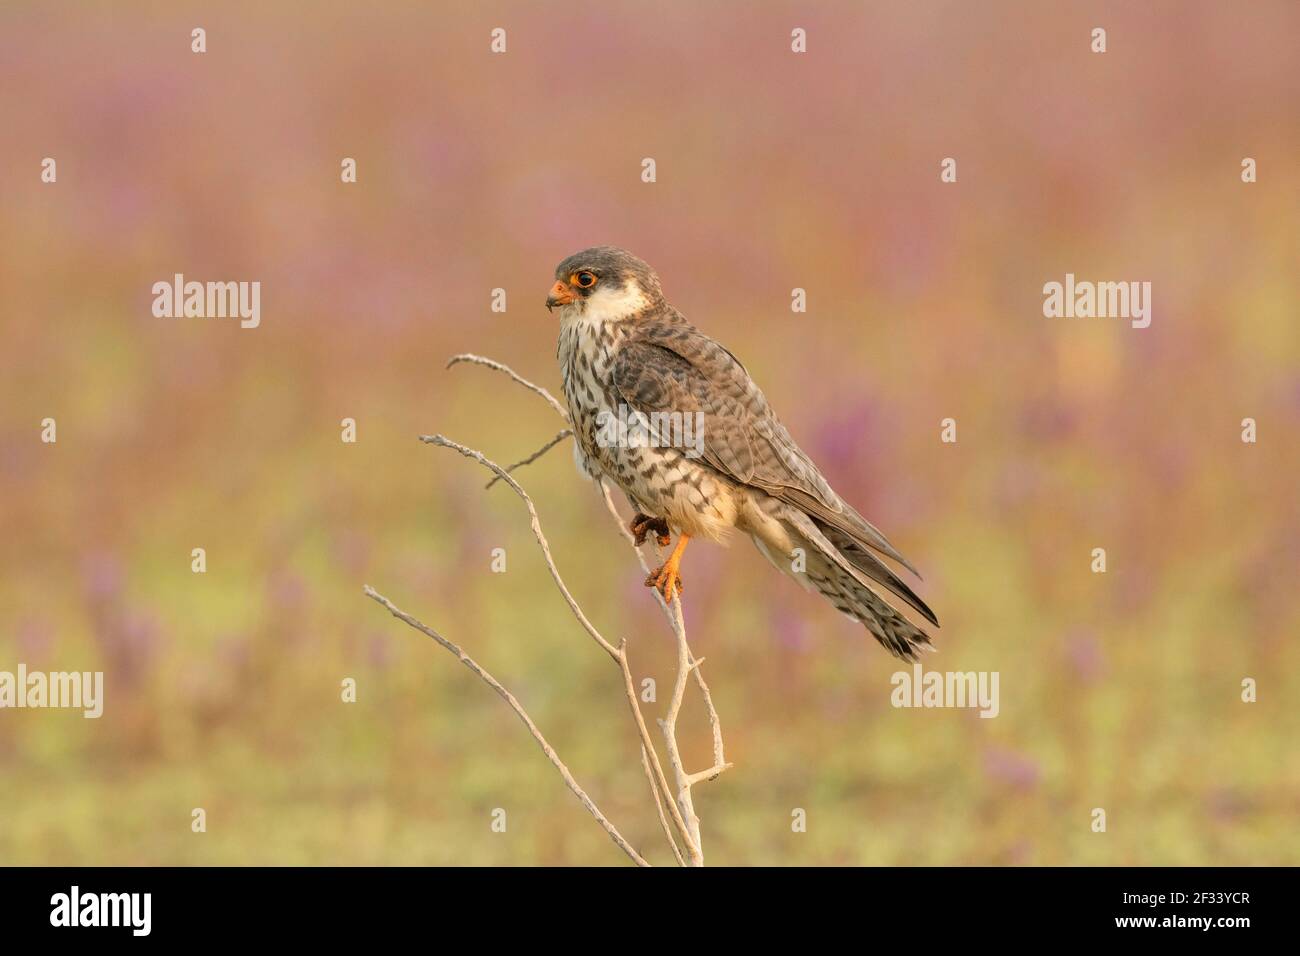 Amur Falcon, Falco amurensis, Femminile, Puna. Le femmine sono di colore grigio più scuro e le loro parti inferiori bianche sono ben marcate con chevron scuri Foto Stock